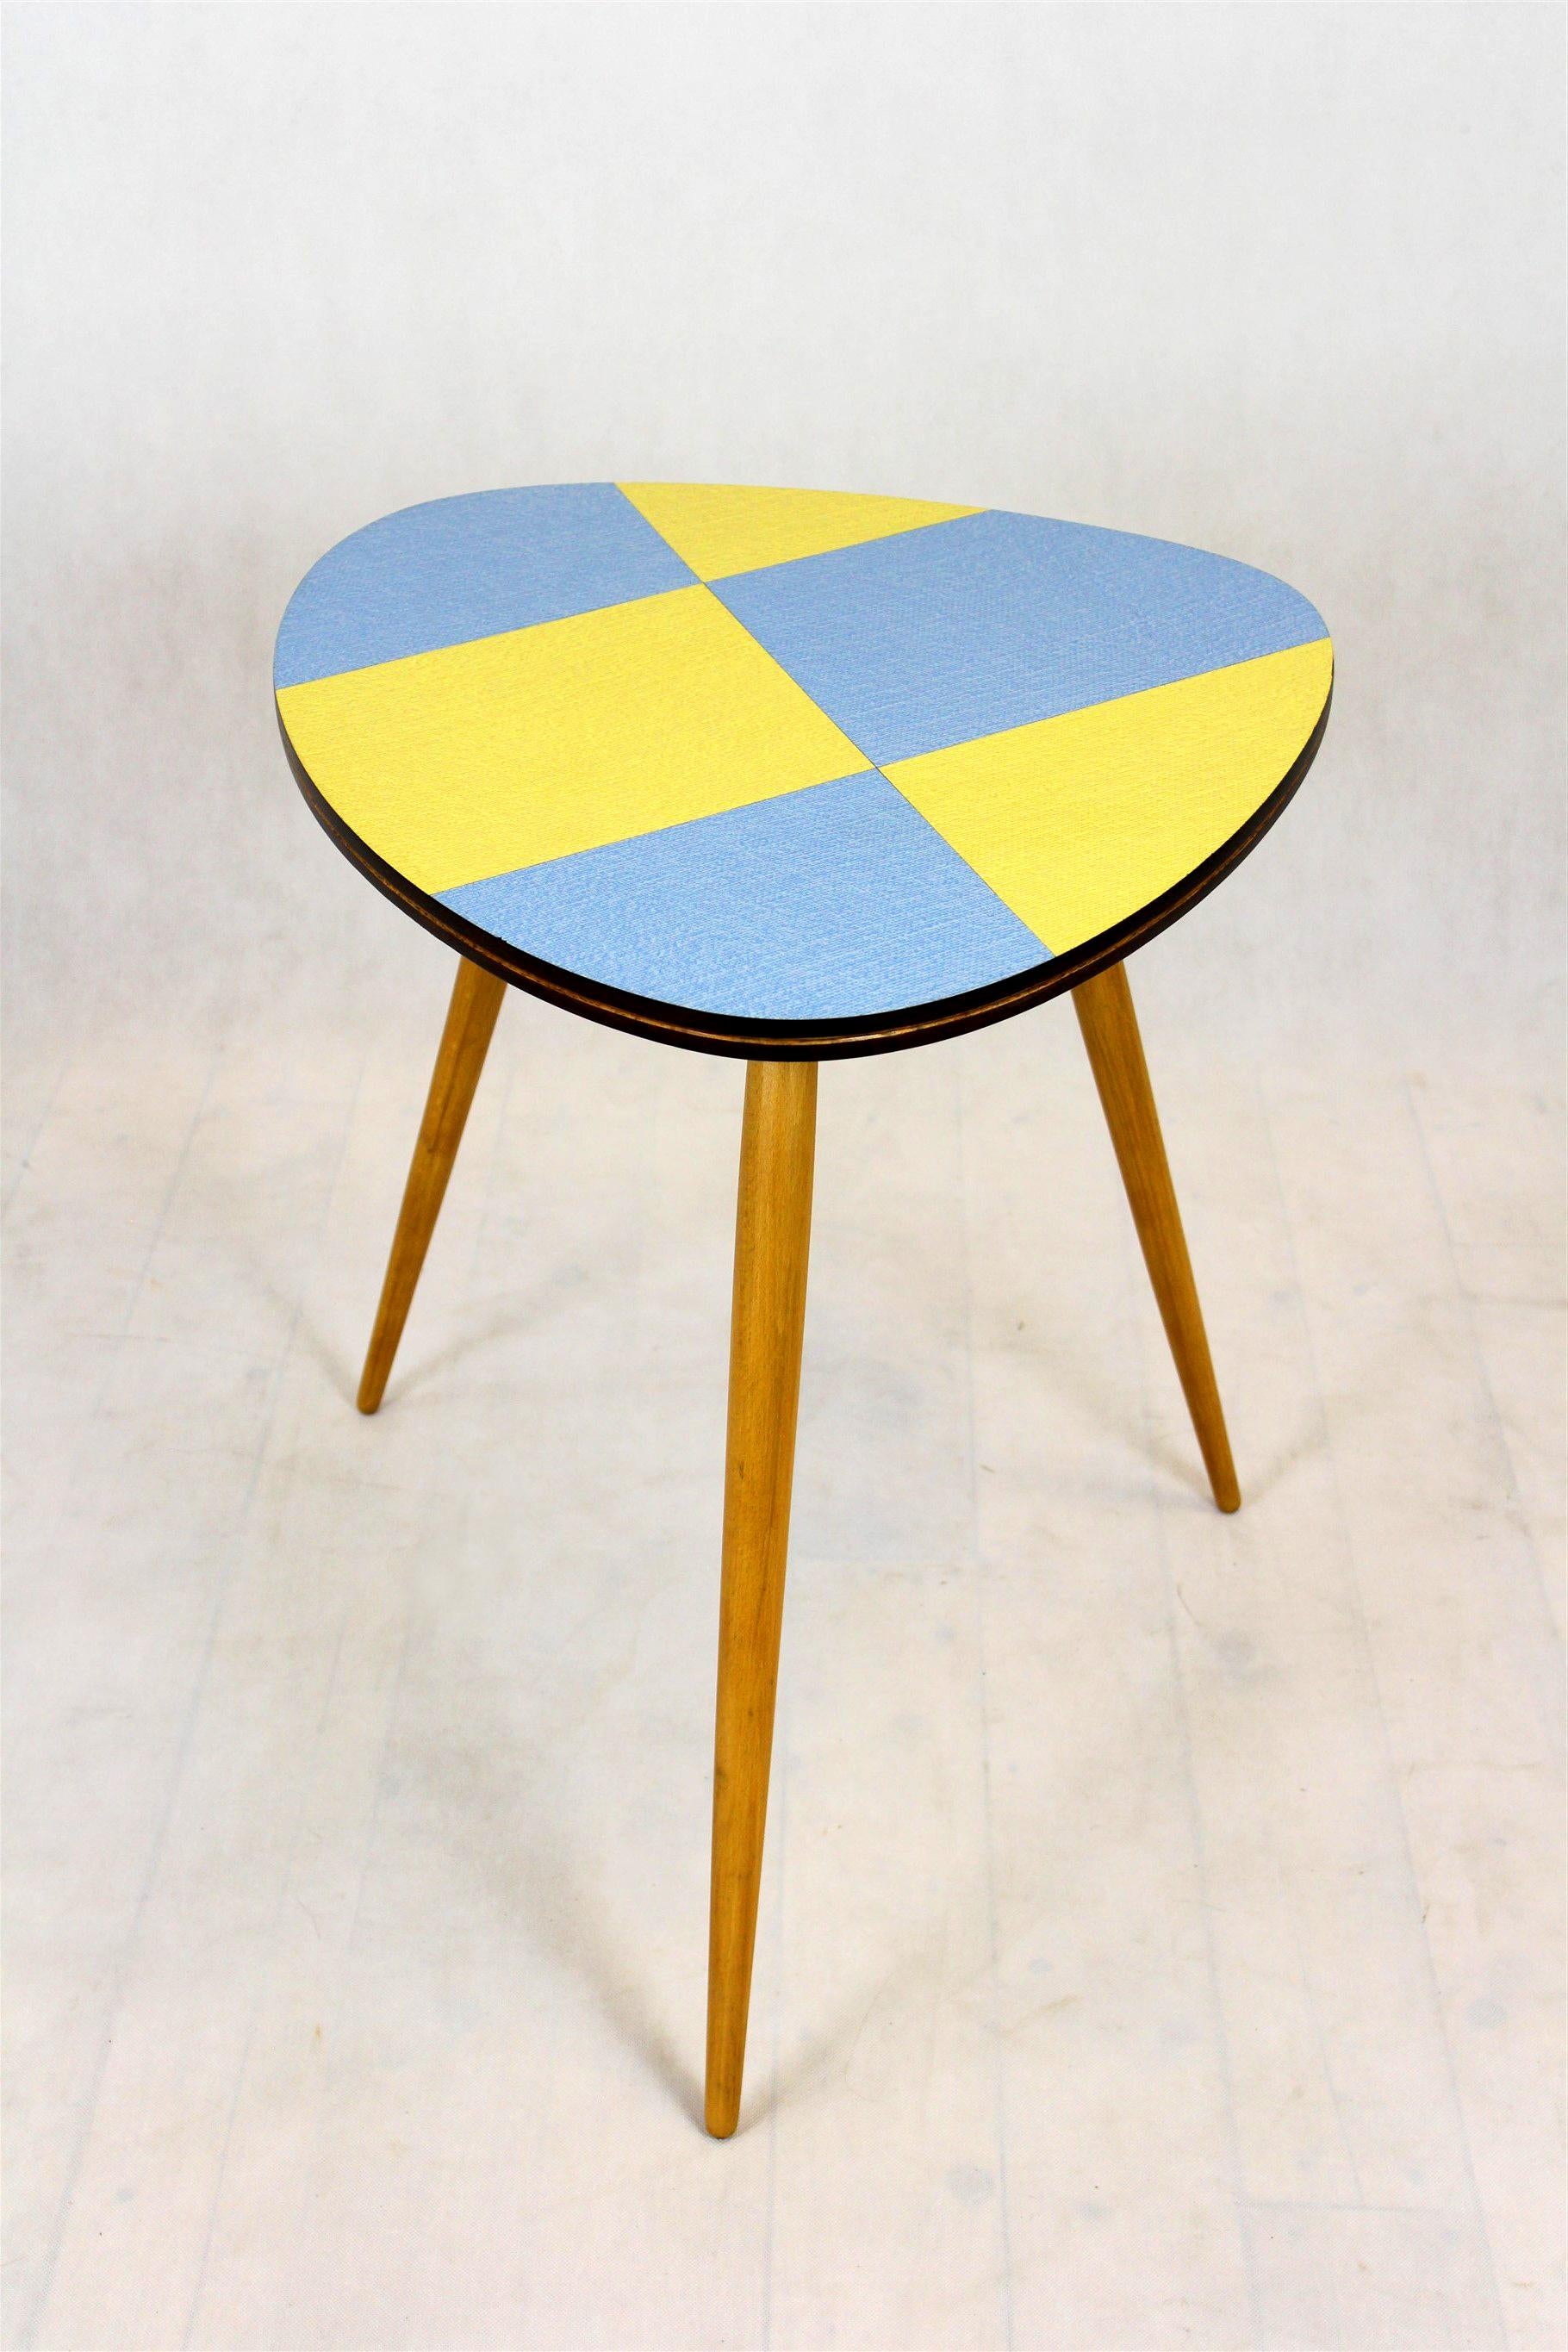 Cette table basse a été produite dans les années 1960 par Drevopodnik Brno dans l'ancienne Tchécoslovaquie. Il présente un plateau original en stratifié multicolore avec un motif géométrique.
Il a été restauré, laqué en satin.
Le plateau de la